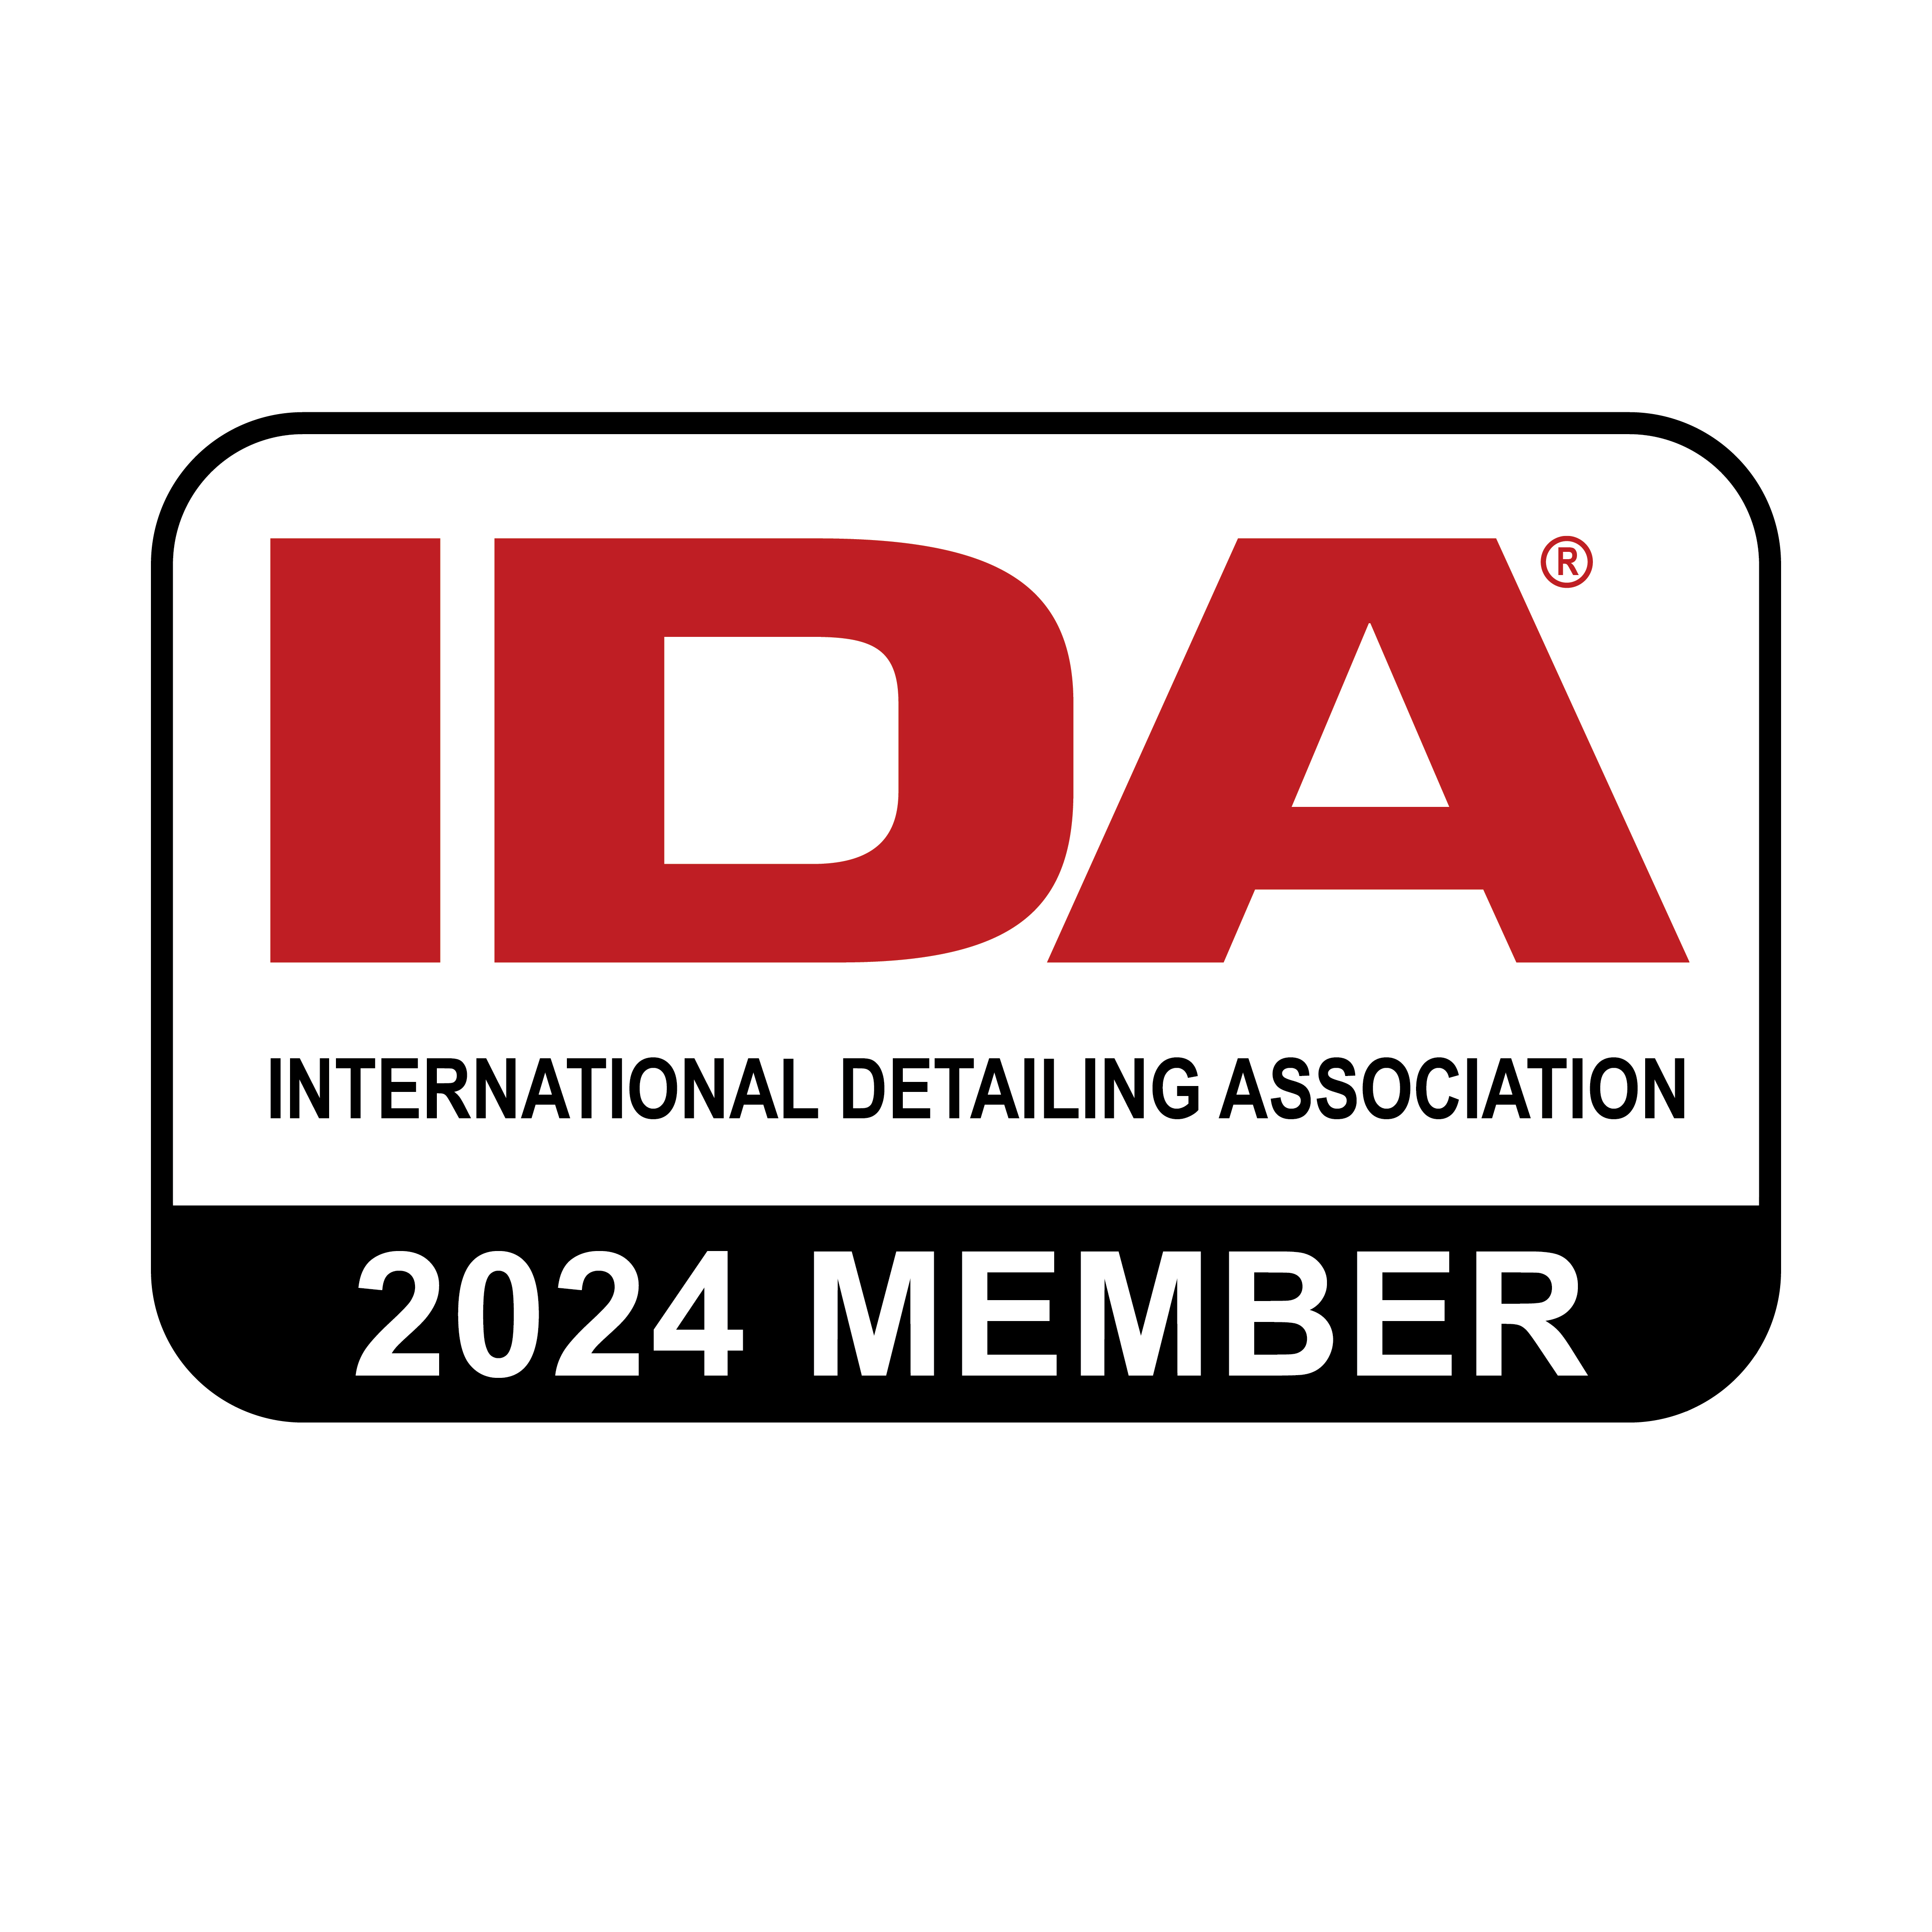 The International Detailing Association - Precision Glaze